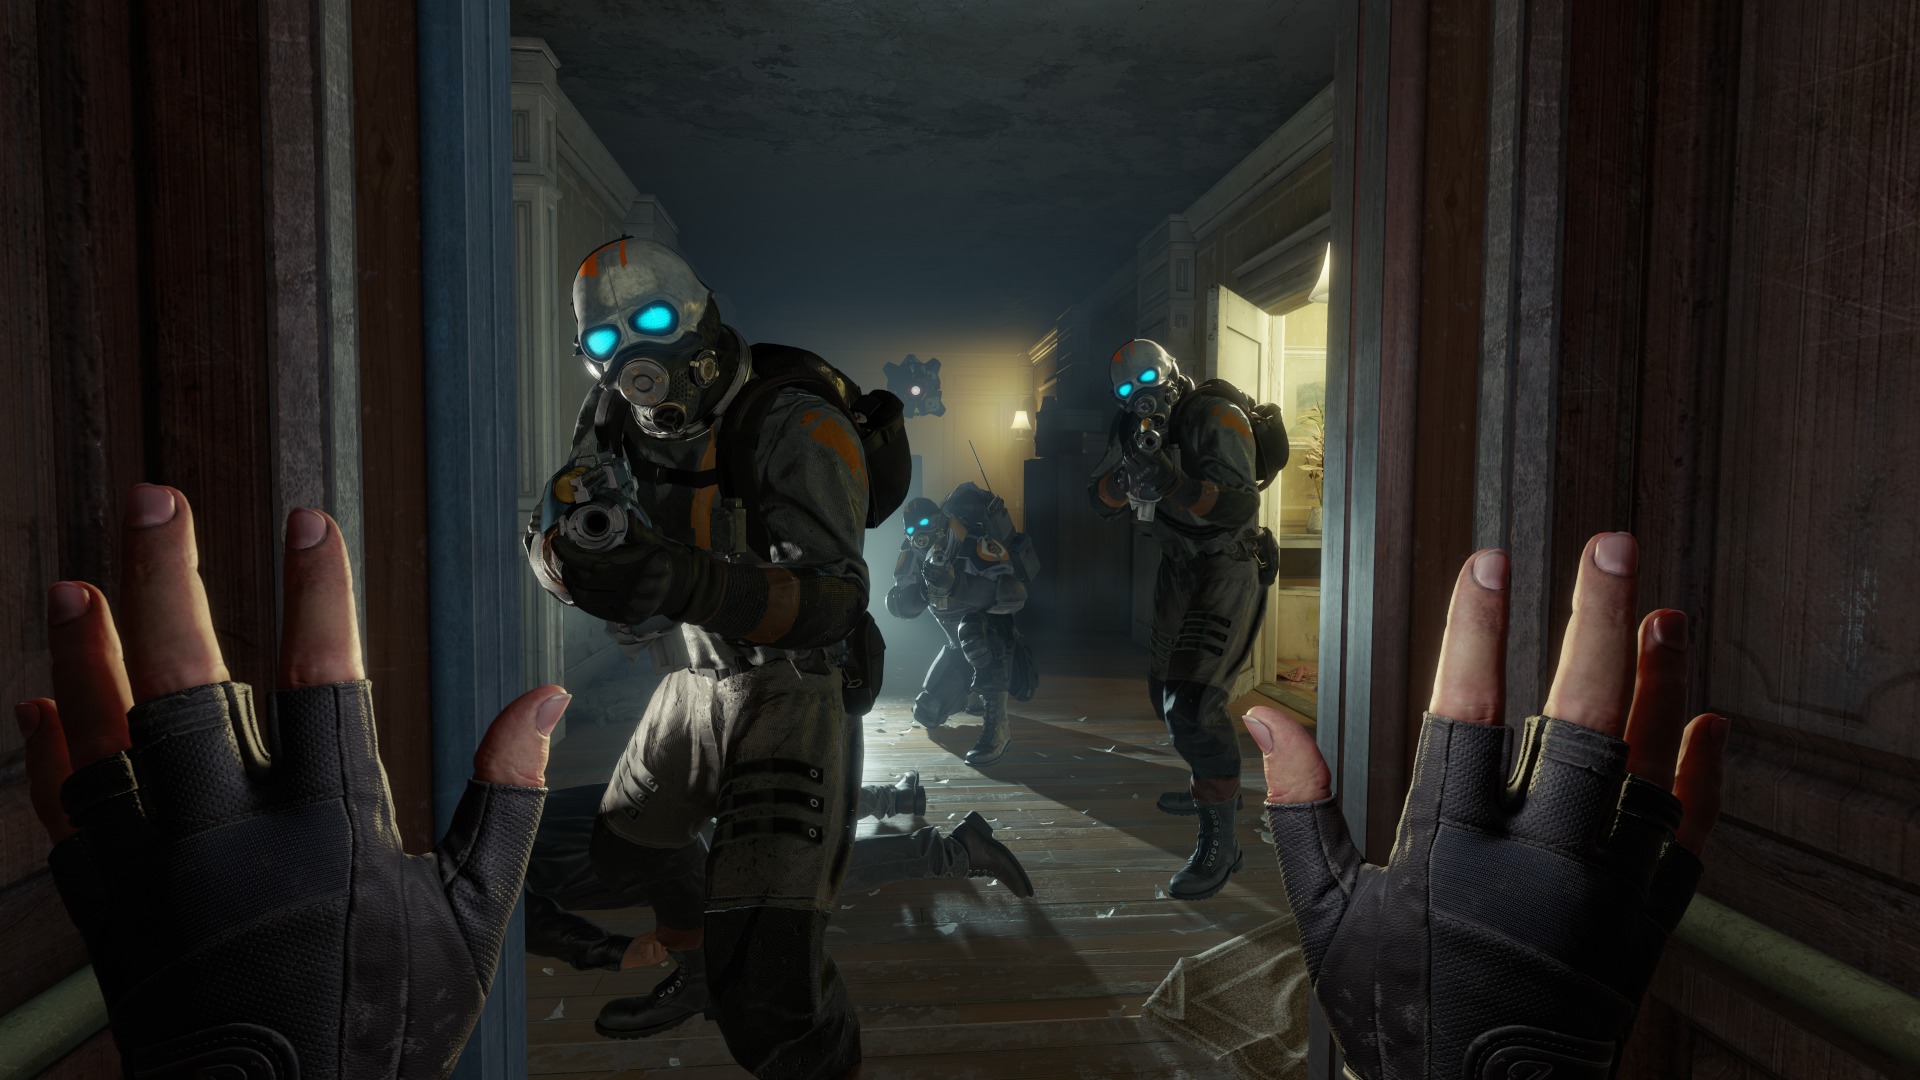 نظر فیل اسپنسر در مورد بازی Half-Life: Alyx و تجربه بازی‌های VR